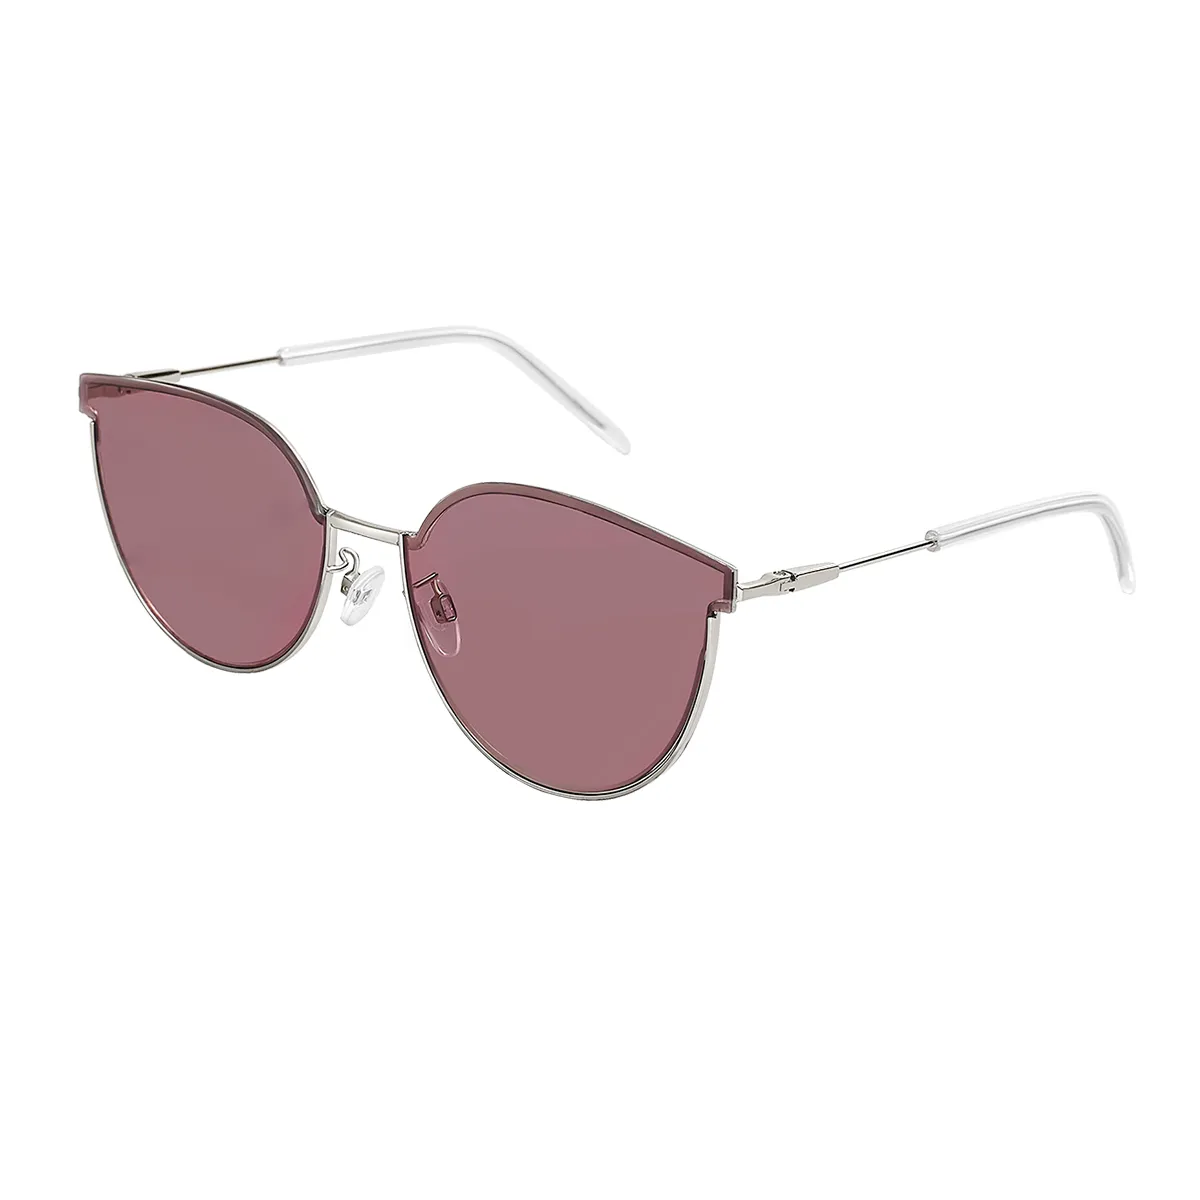 Elise - Cat-eye Silver/1 Sunglasses for Women